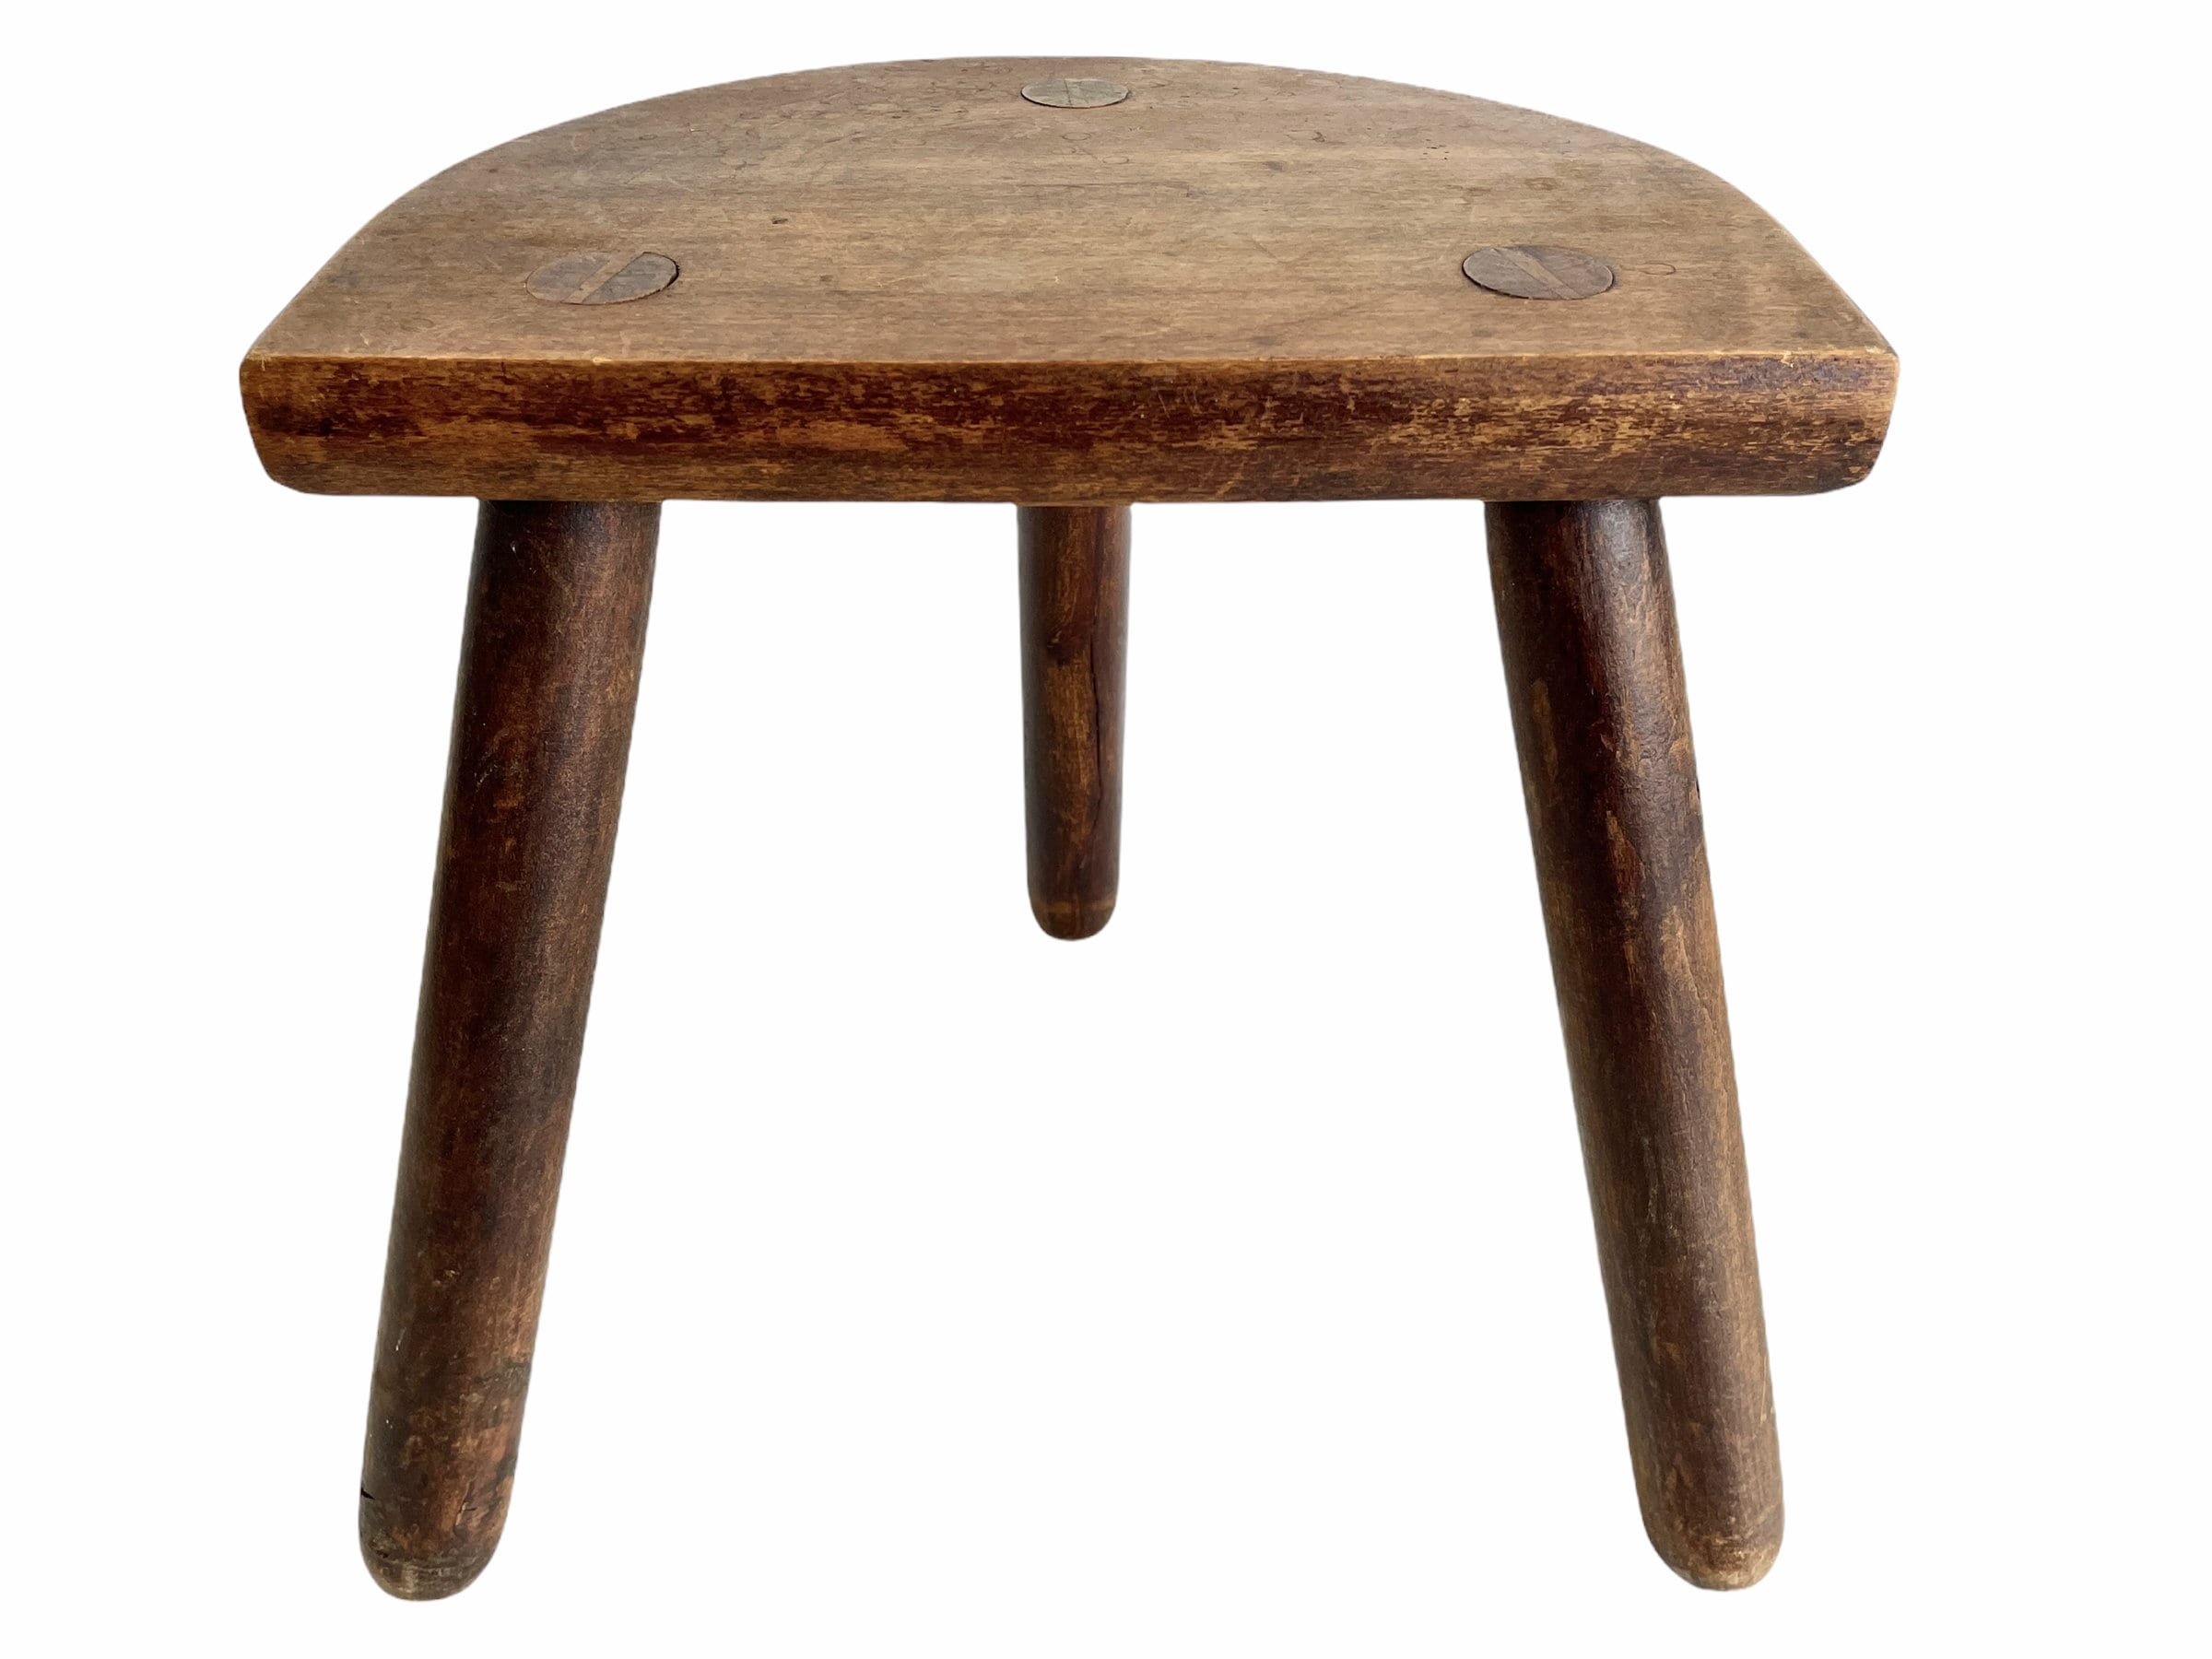 vintage français bois traire tabouret chaise siège cuisine table ferme d en forme de plante repose pied socle c1960-70's/eve